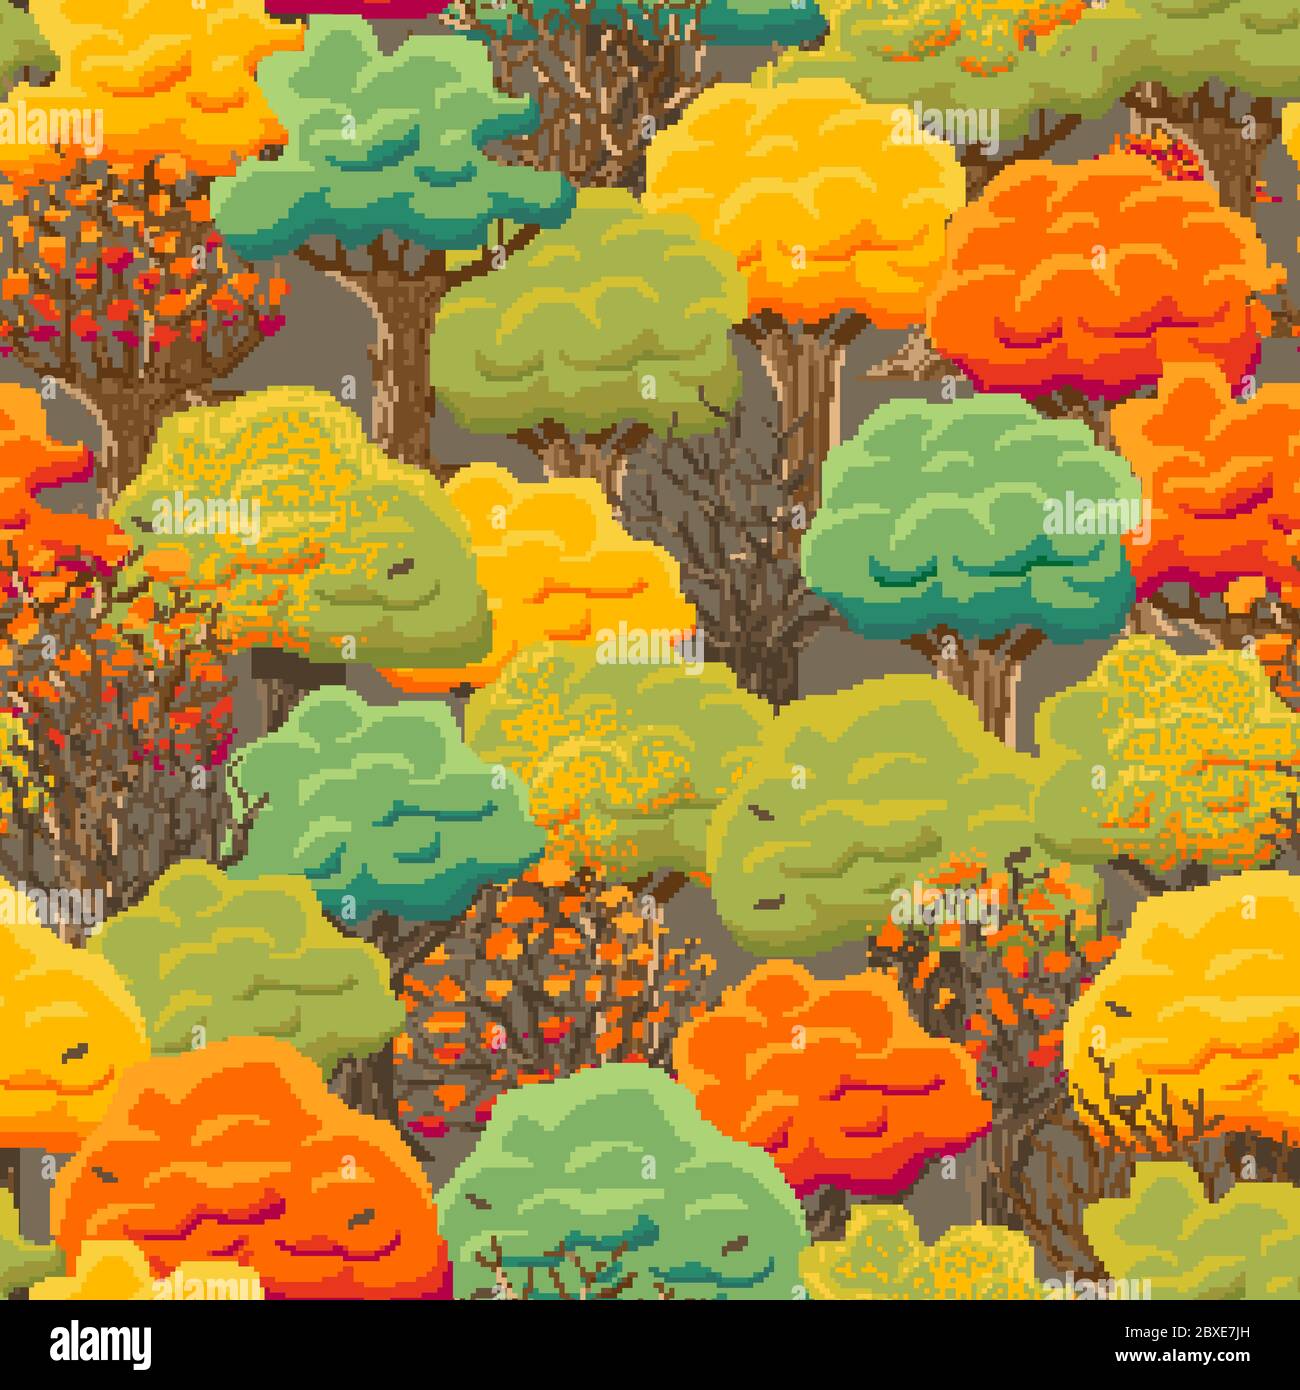 8 Bit, Arcade-Stil, Pixel nahtlose Muster mit Herbstbäumen. Laubfall, farbige Baumkronen. Stock Vektor